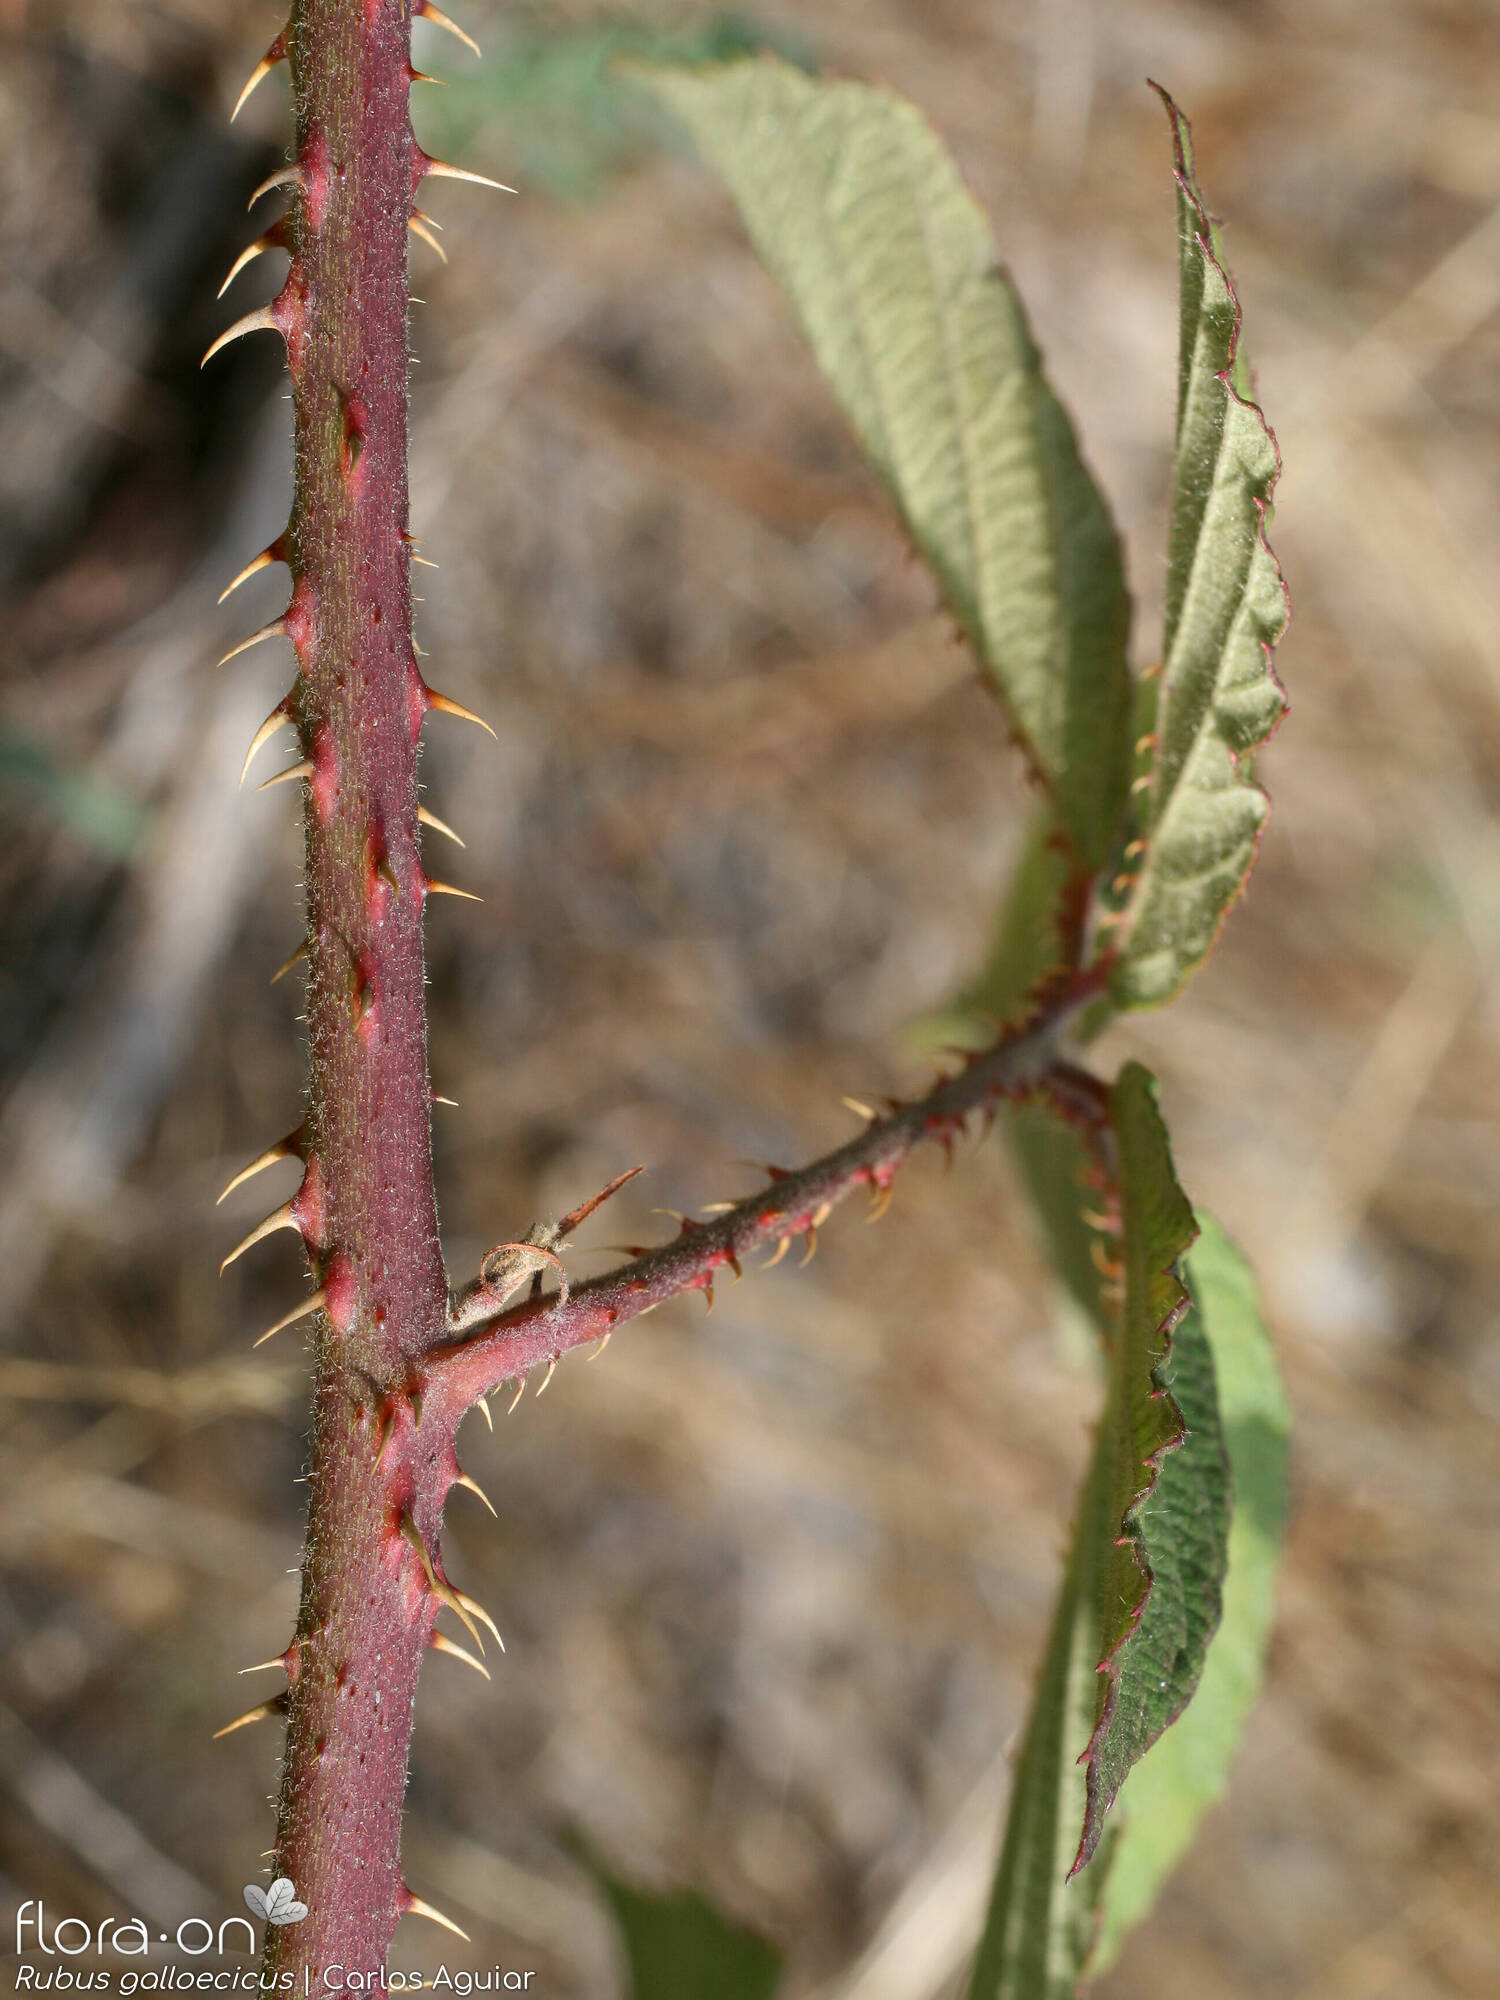 Rubus galloecicus - Folha | Carlos Aguiar; CC BY-NC 4.0